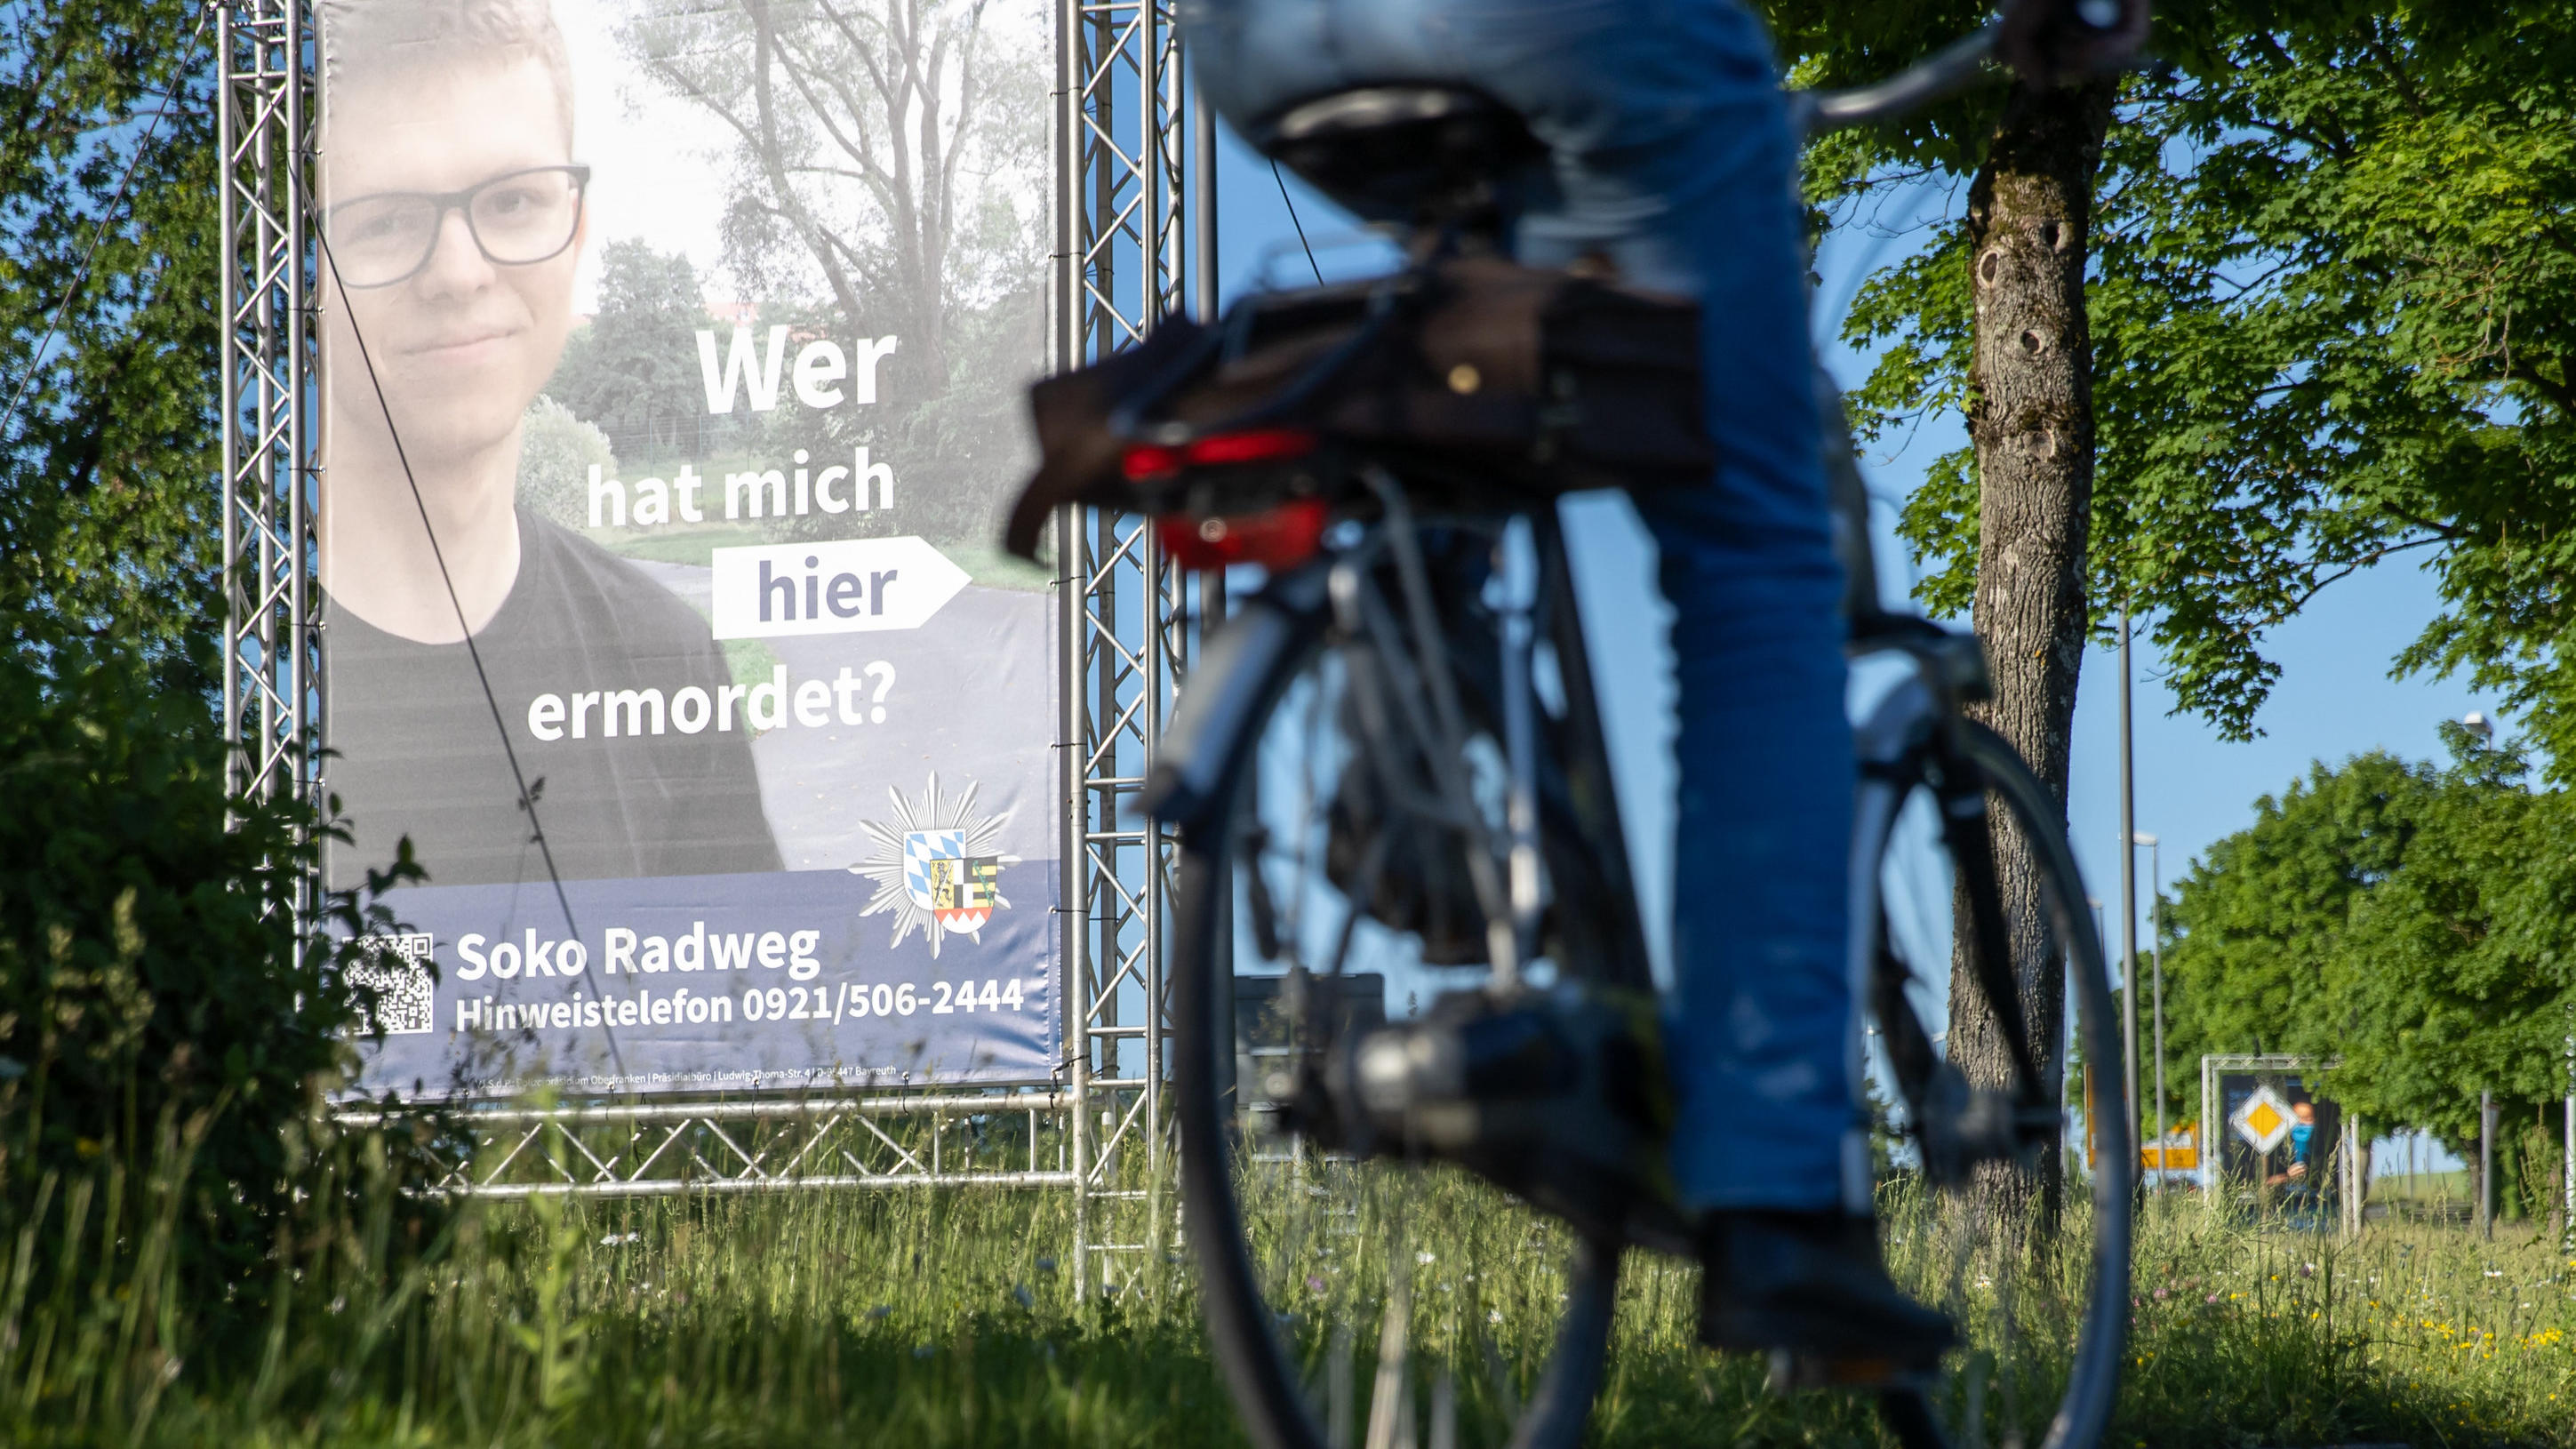 14.06.2021, Bayern, Bayreuth: "Wer hat mich hier ermordet?" steht auf einem großen Plakat mit Foto des Opfers neben dem Tatort. Mithilfe des Plakats sucht die Polizei nach einem Täter, der im Sommer 2020 einen 24-Jährigen in Bayreuth umgebracht haben